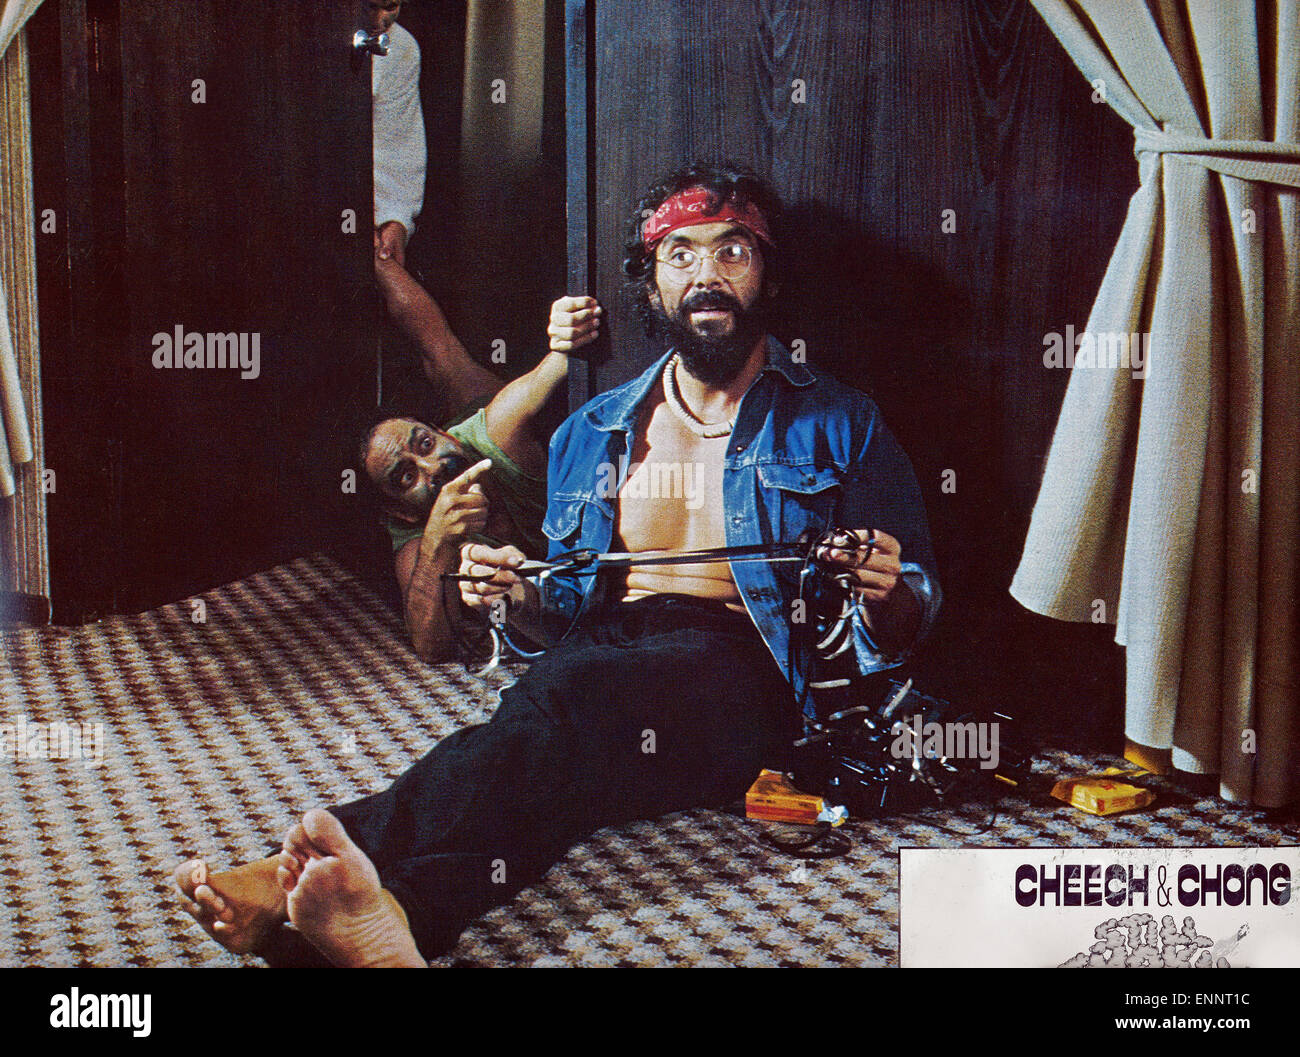 Still Smokin, aka: Cheech & Chong: Jetzt raucht gar nichts mehr, USA 1983, Regie: Tommy Chong, Darsteller: Cheech Marin, Tommy C Stock Photo